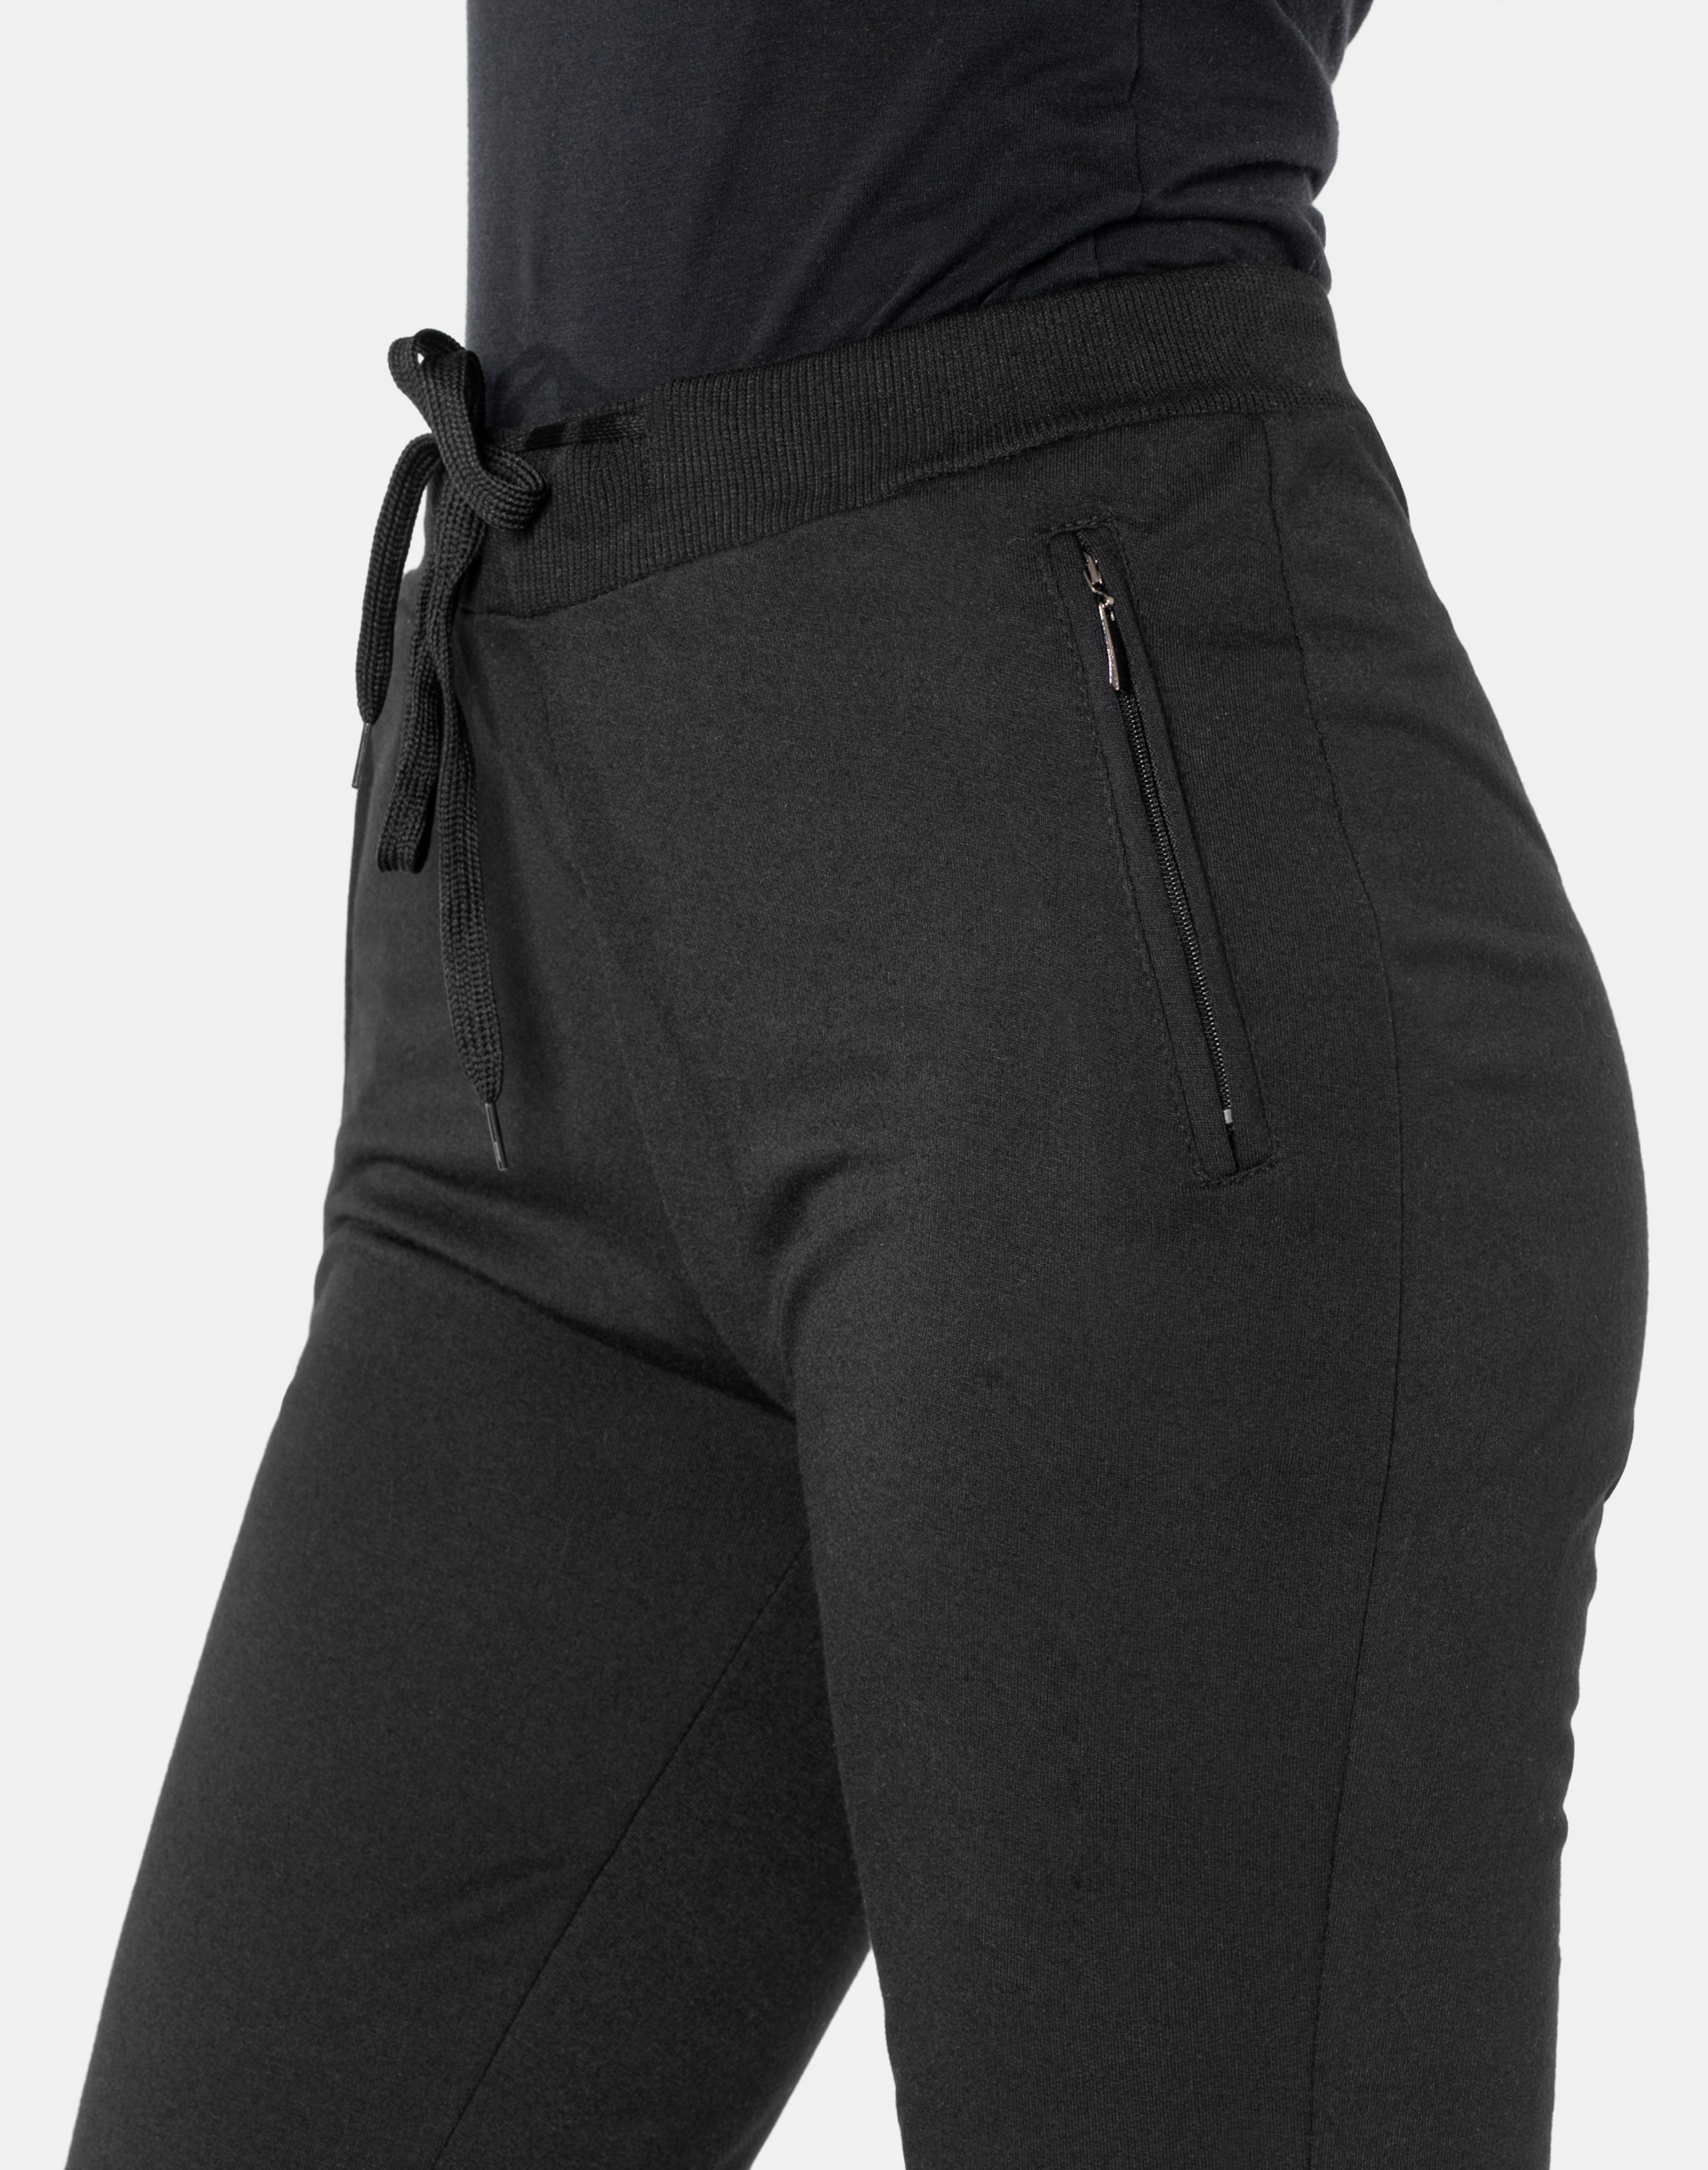 Спортивные штаны женские спортивные костюмы 525-01 XXL размер XXL